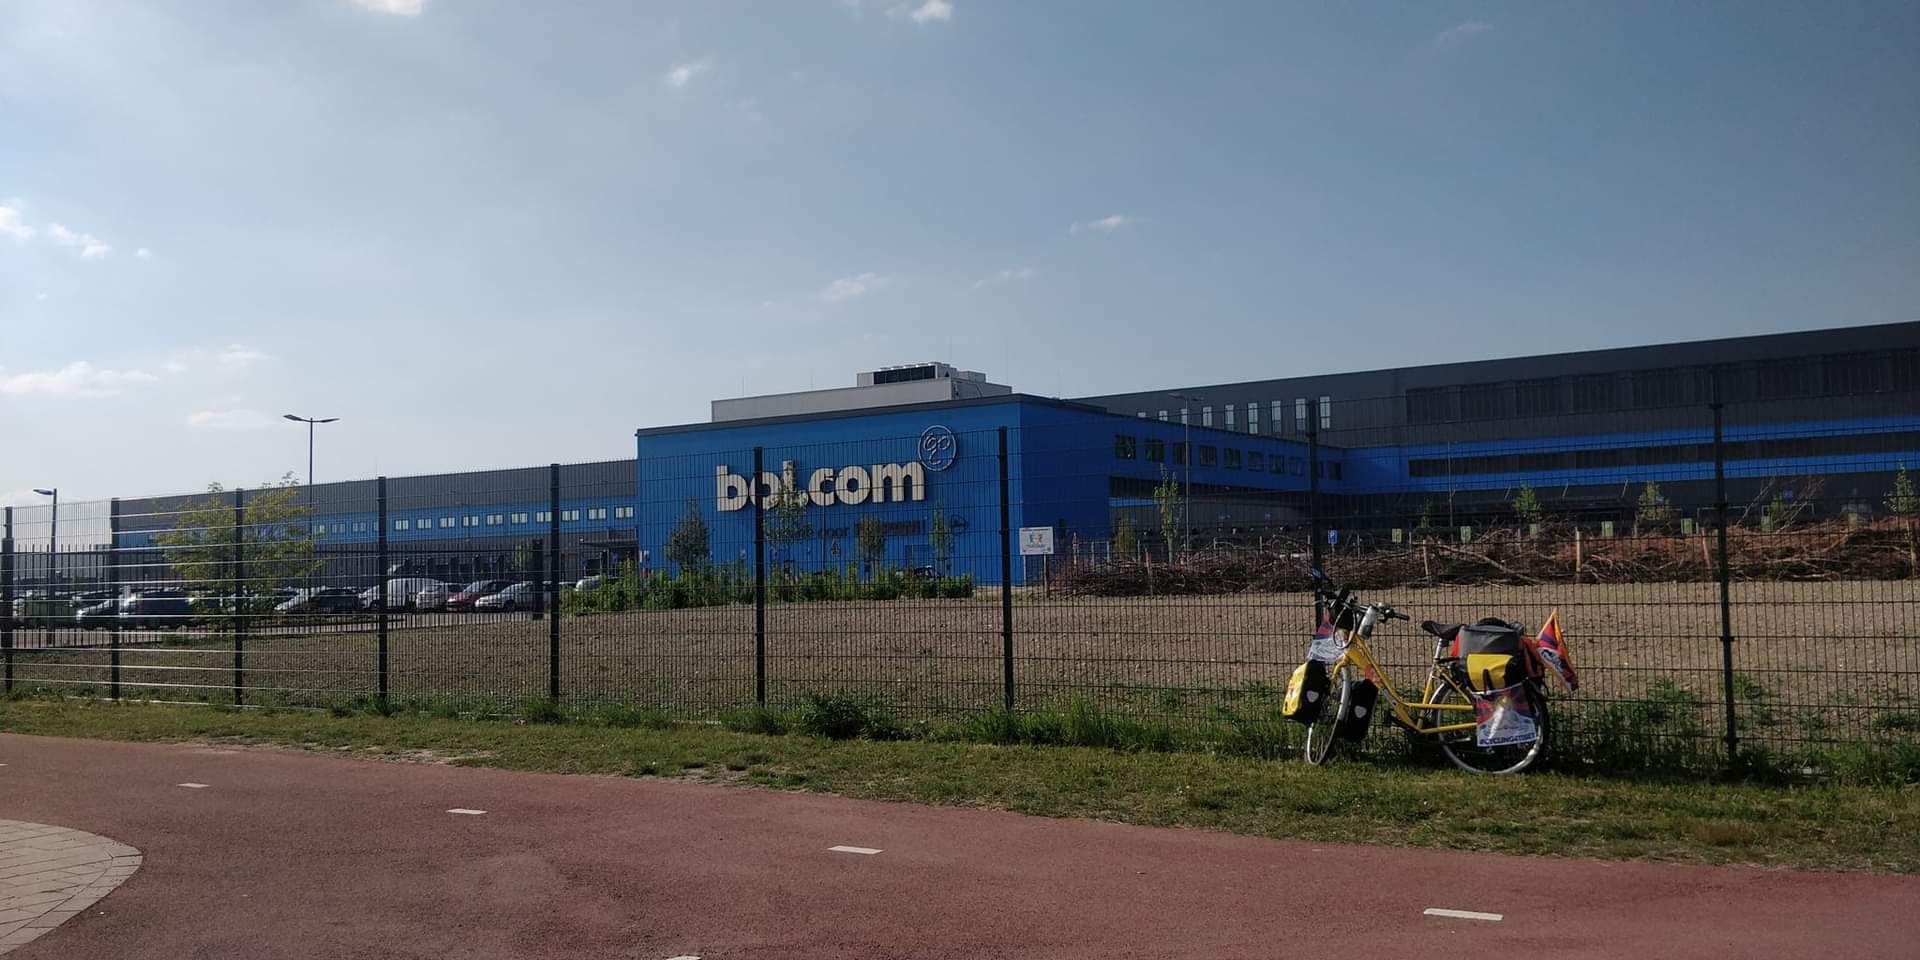 Vestiging Bolcom in Waalwijk